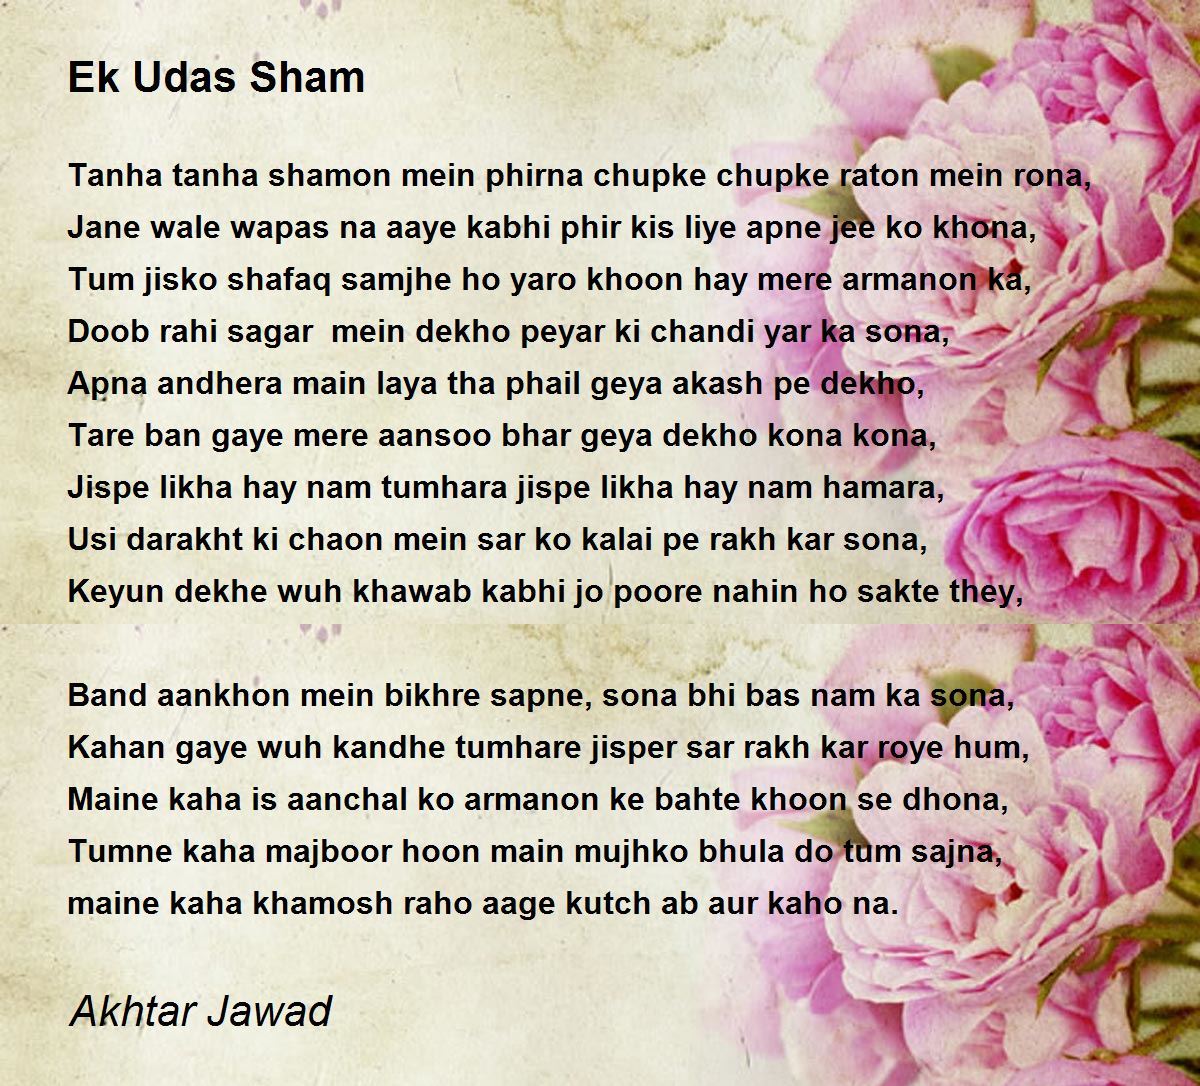 Ek Udas Sham - Ek Udas Sham Poem by Akhtar Jawad